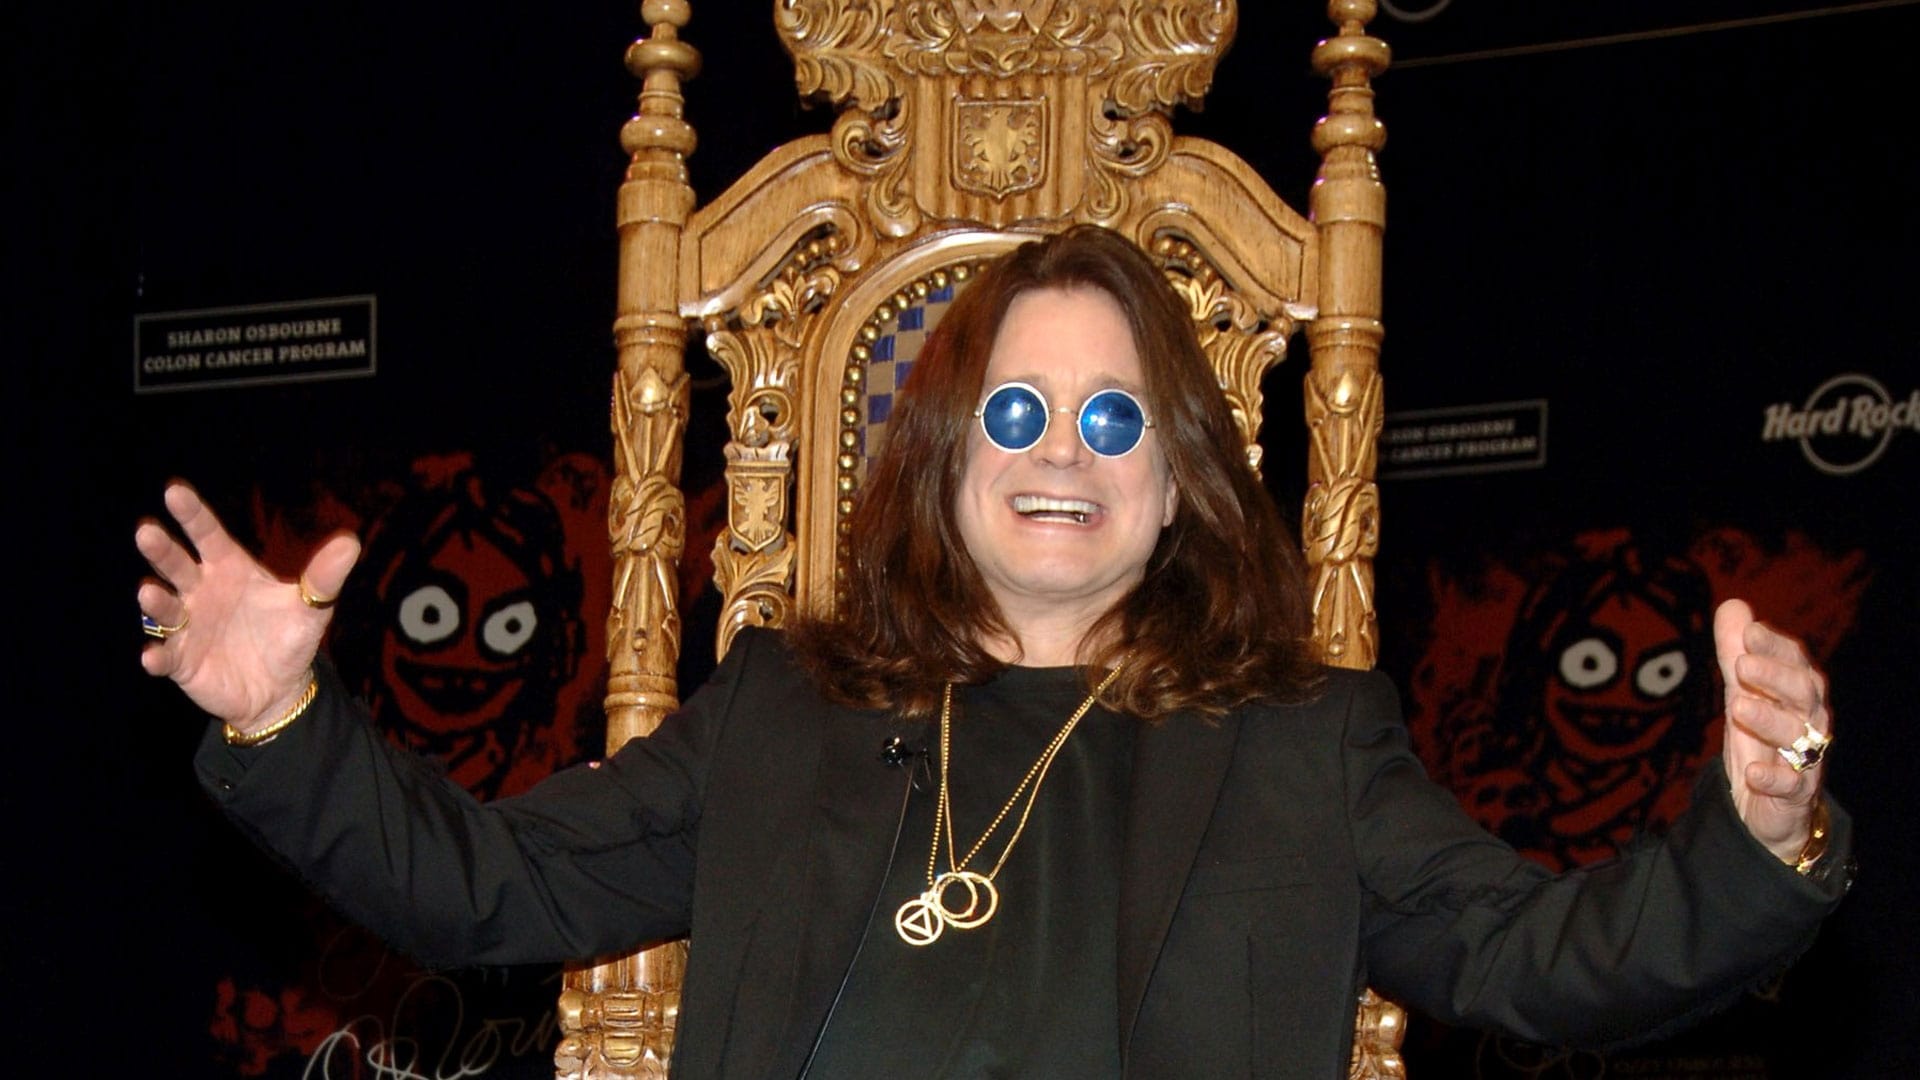 Ozzy Osbourne: The Prince Of F*?$!@# Darkness - (Unauthorized)